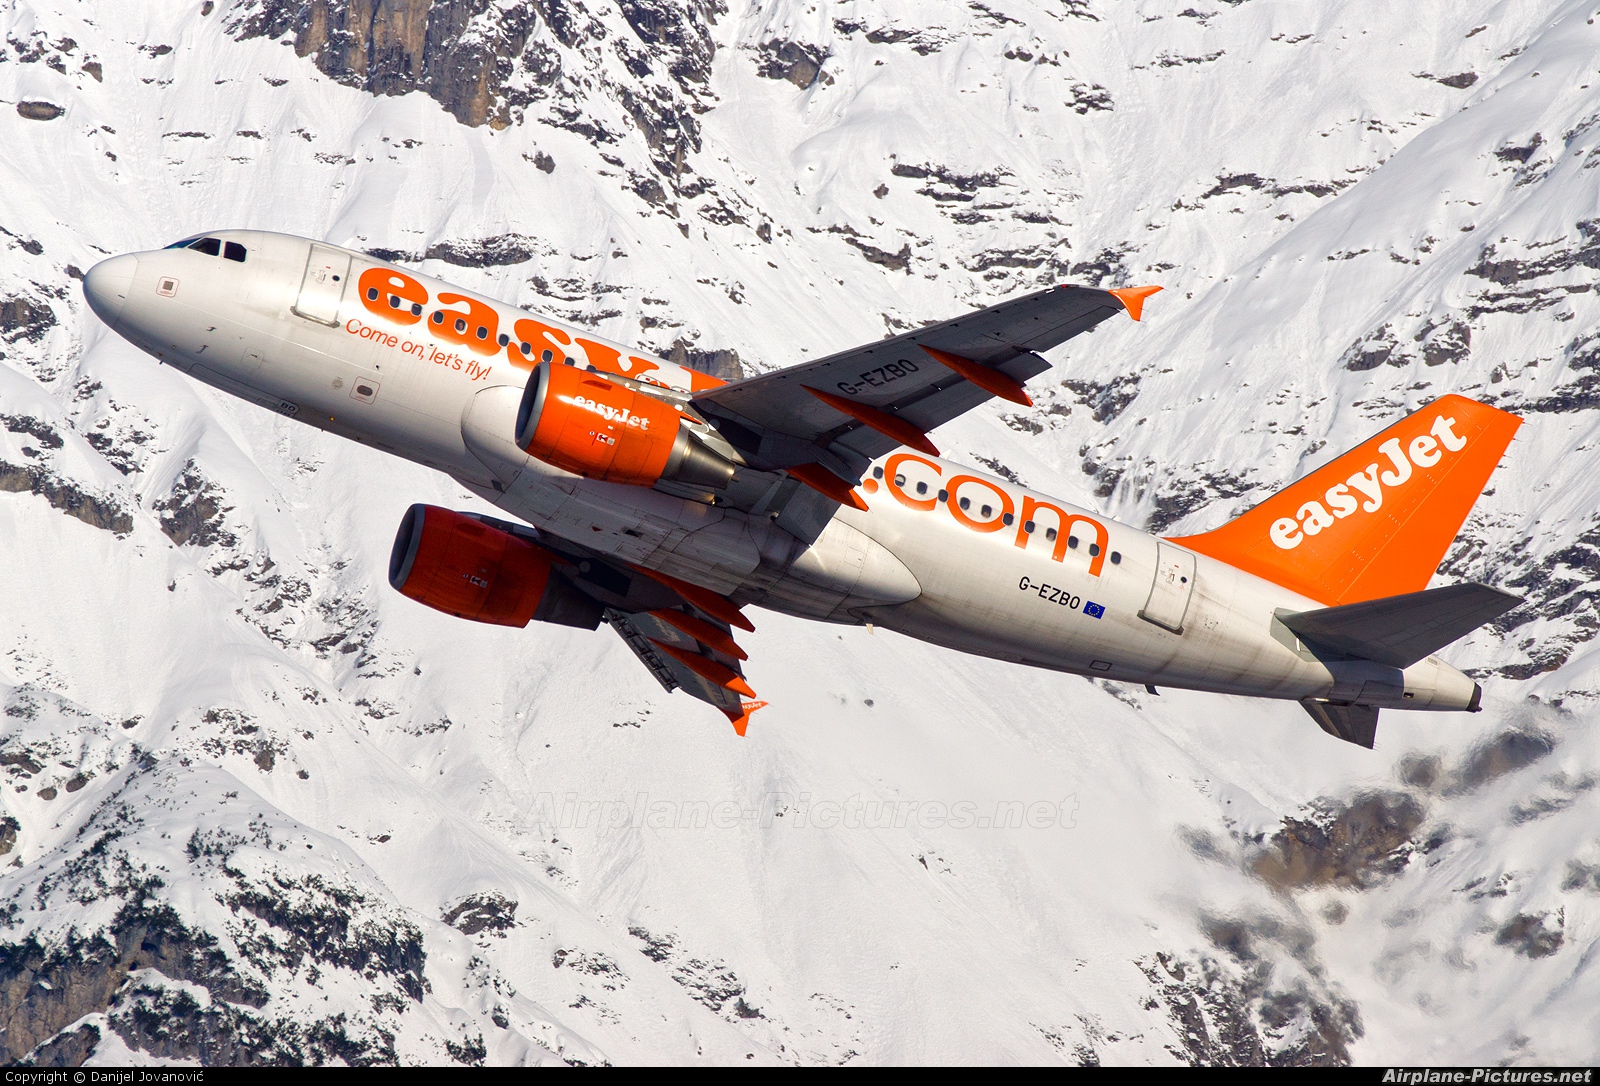 easyJet G-EZBO aircraft at Innsbruck